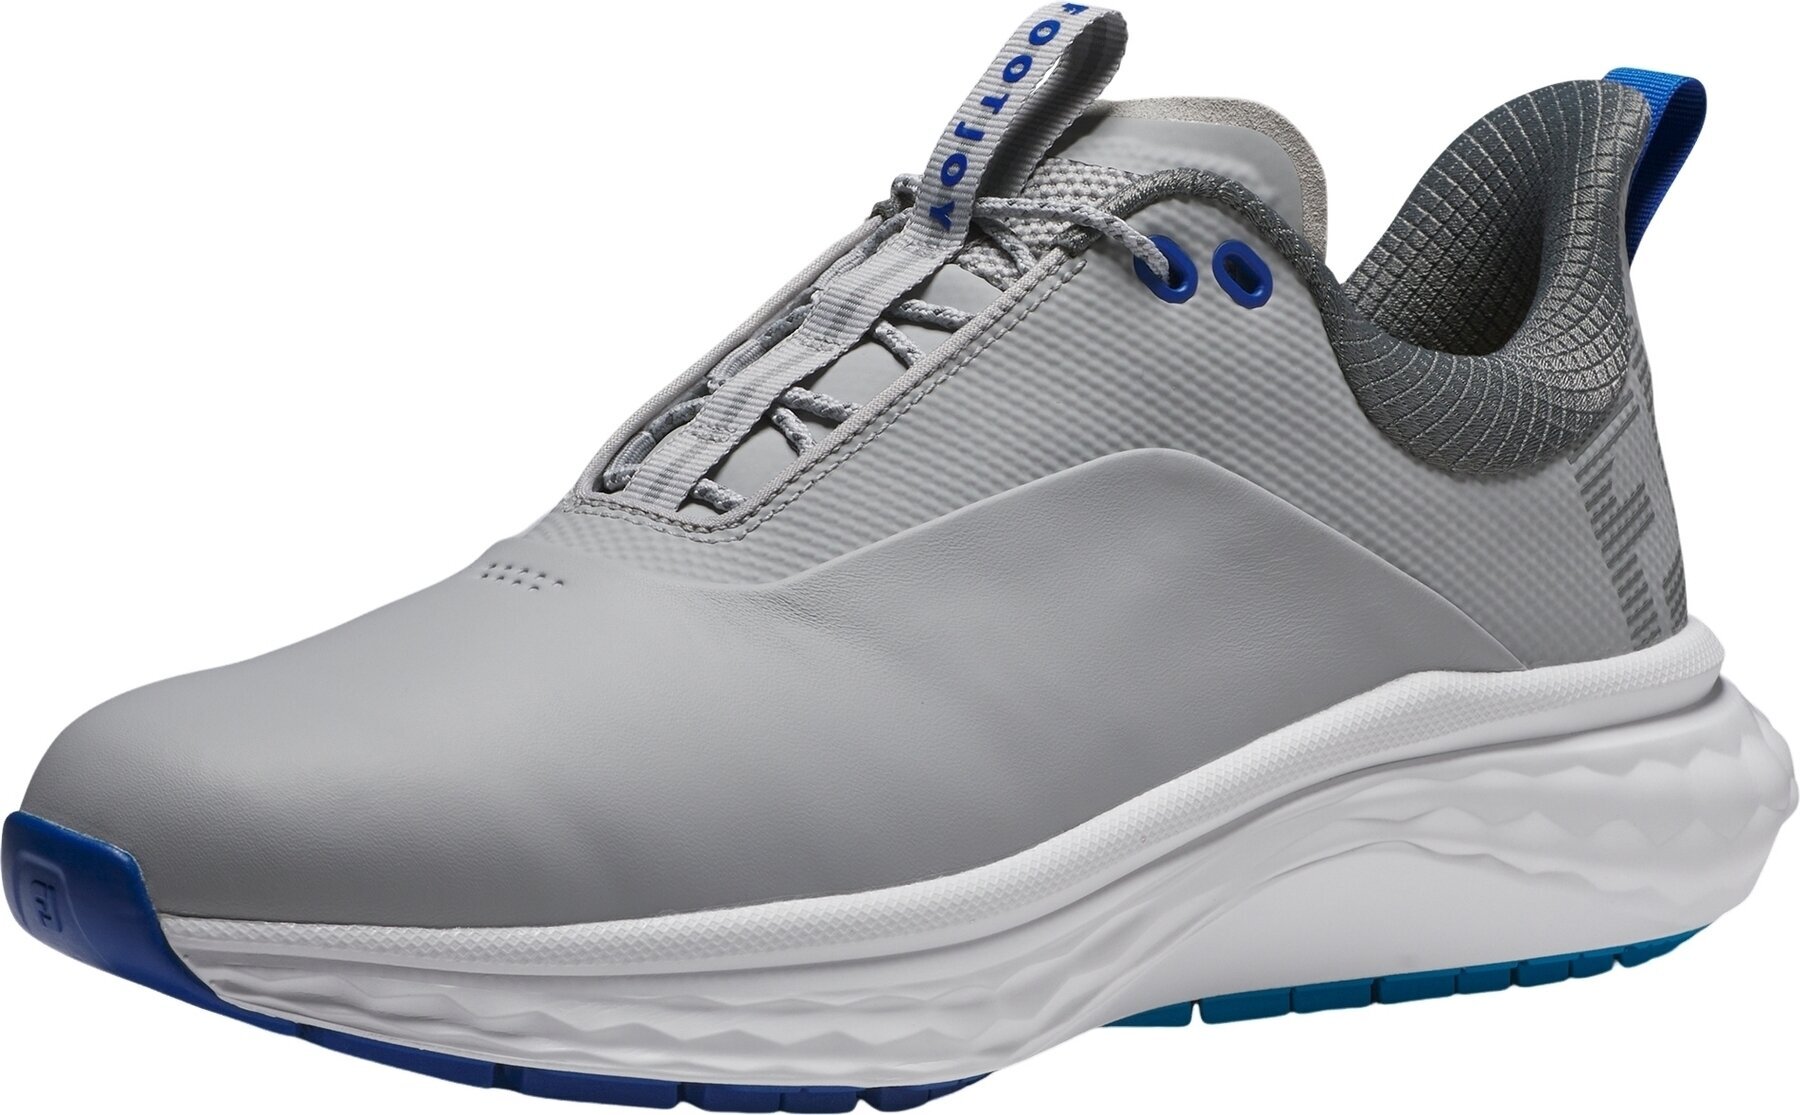 Miesten golfkengät Footjoy Quantum Mens Golf Shoes Grey/White/Blue 41